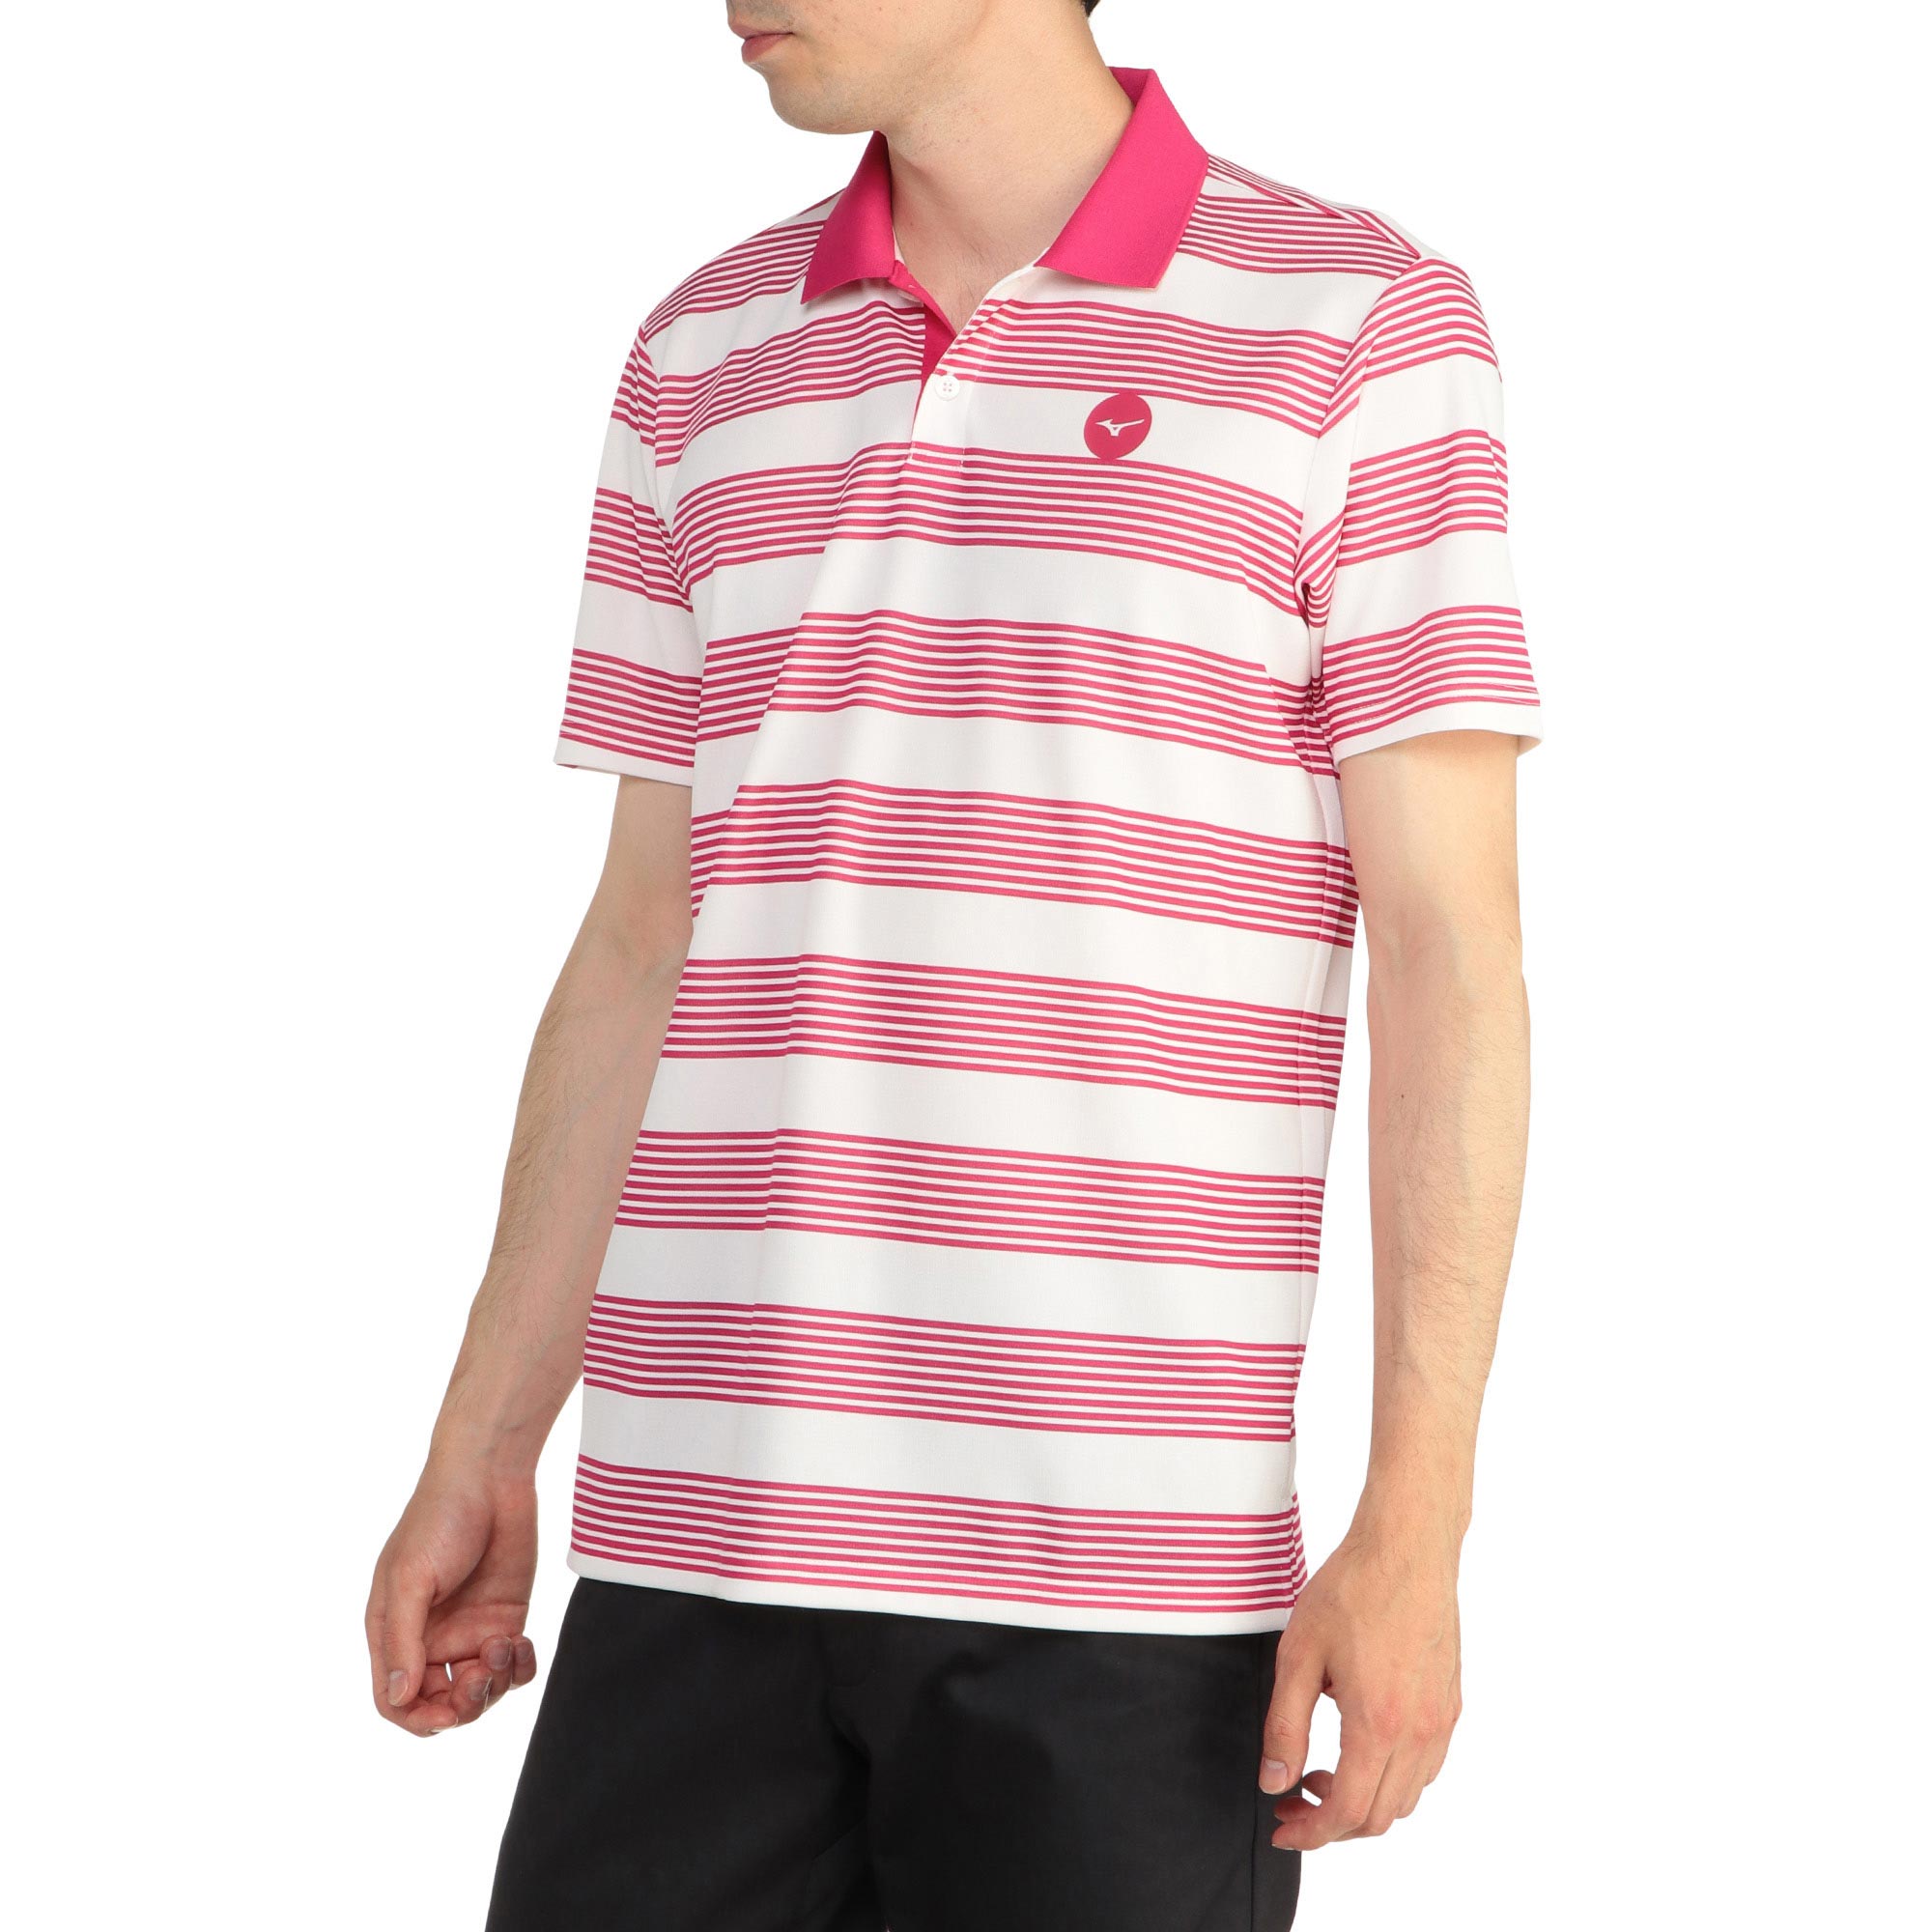 正規品販売 ポロシャツ ゴルフ ボーダー BOOLIJ 半袖 ボーダー